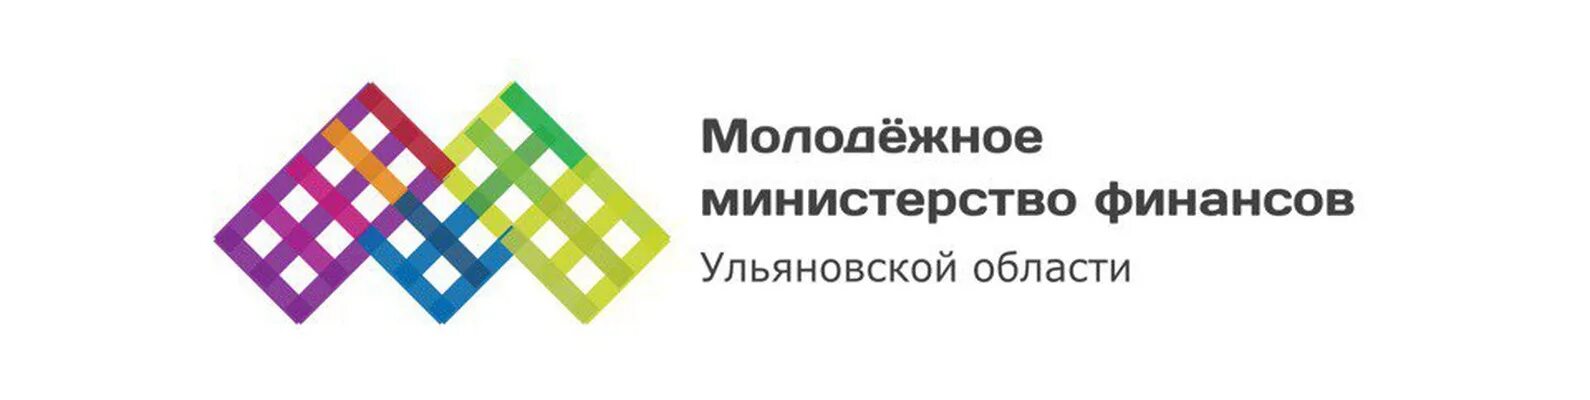 Министерство молодежи логотип. Министерство молодежи РТ. Министерство по делам молодежи РТ логотип. Министерство финансов Ульяновской области лого.